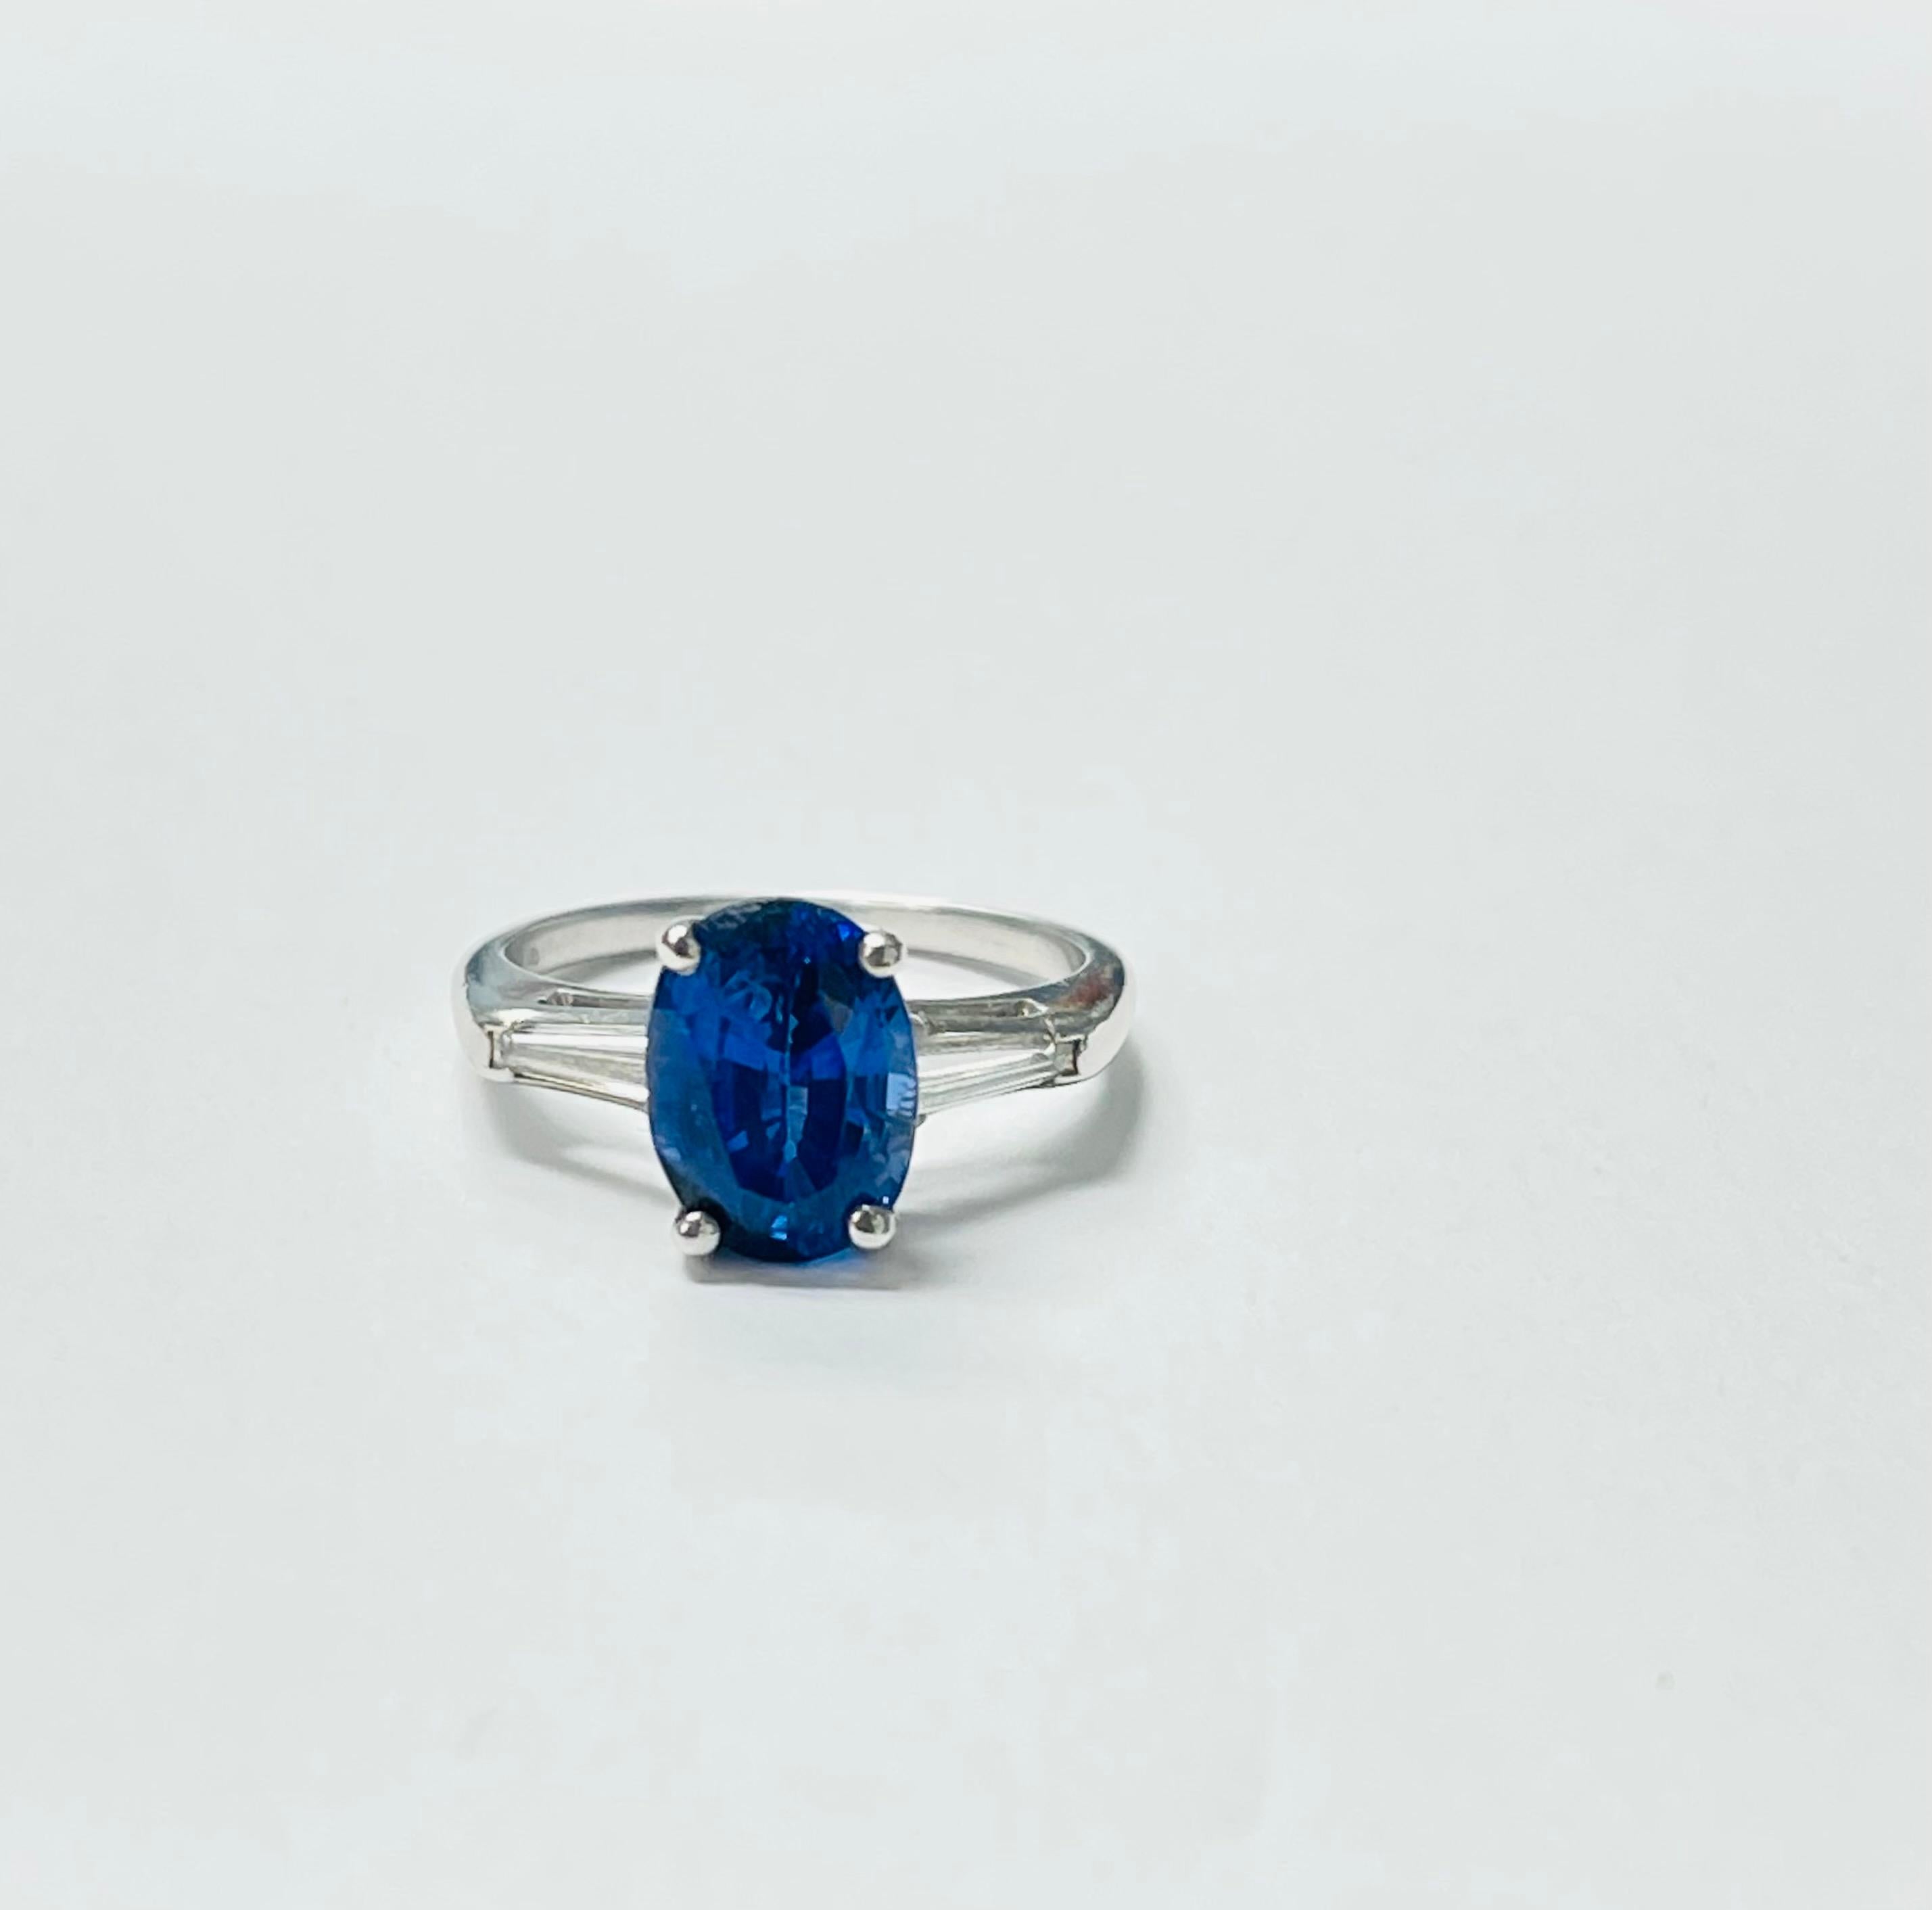 Magnifique bague de fiançailles en saphir bleu royal et diamant, réalisée à la main en platine. 
Les détails sont les suivants : 
Poids du saphir bleu : 3,75 carats 
Poids du diamant : 0,25 carats 
Métal : Platine 
